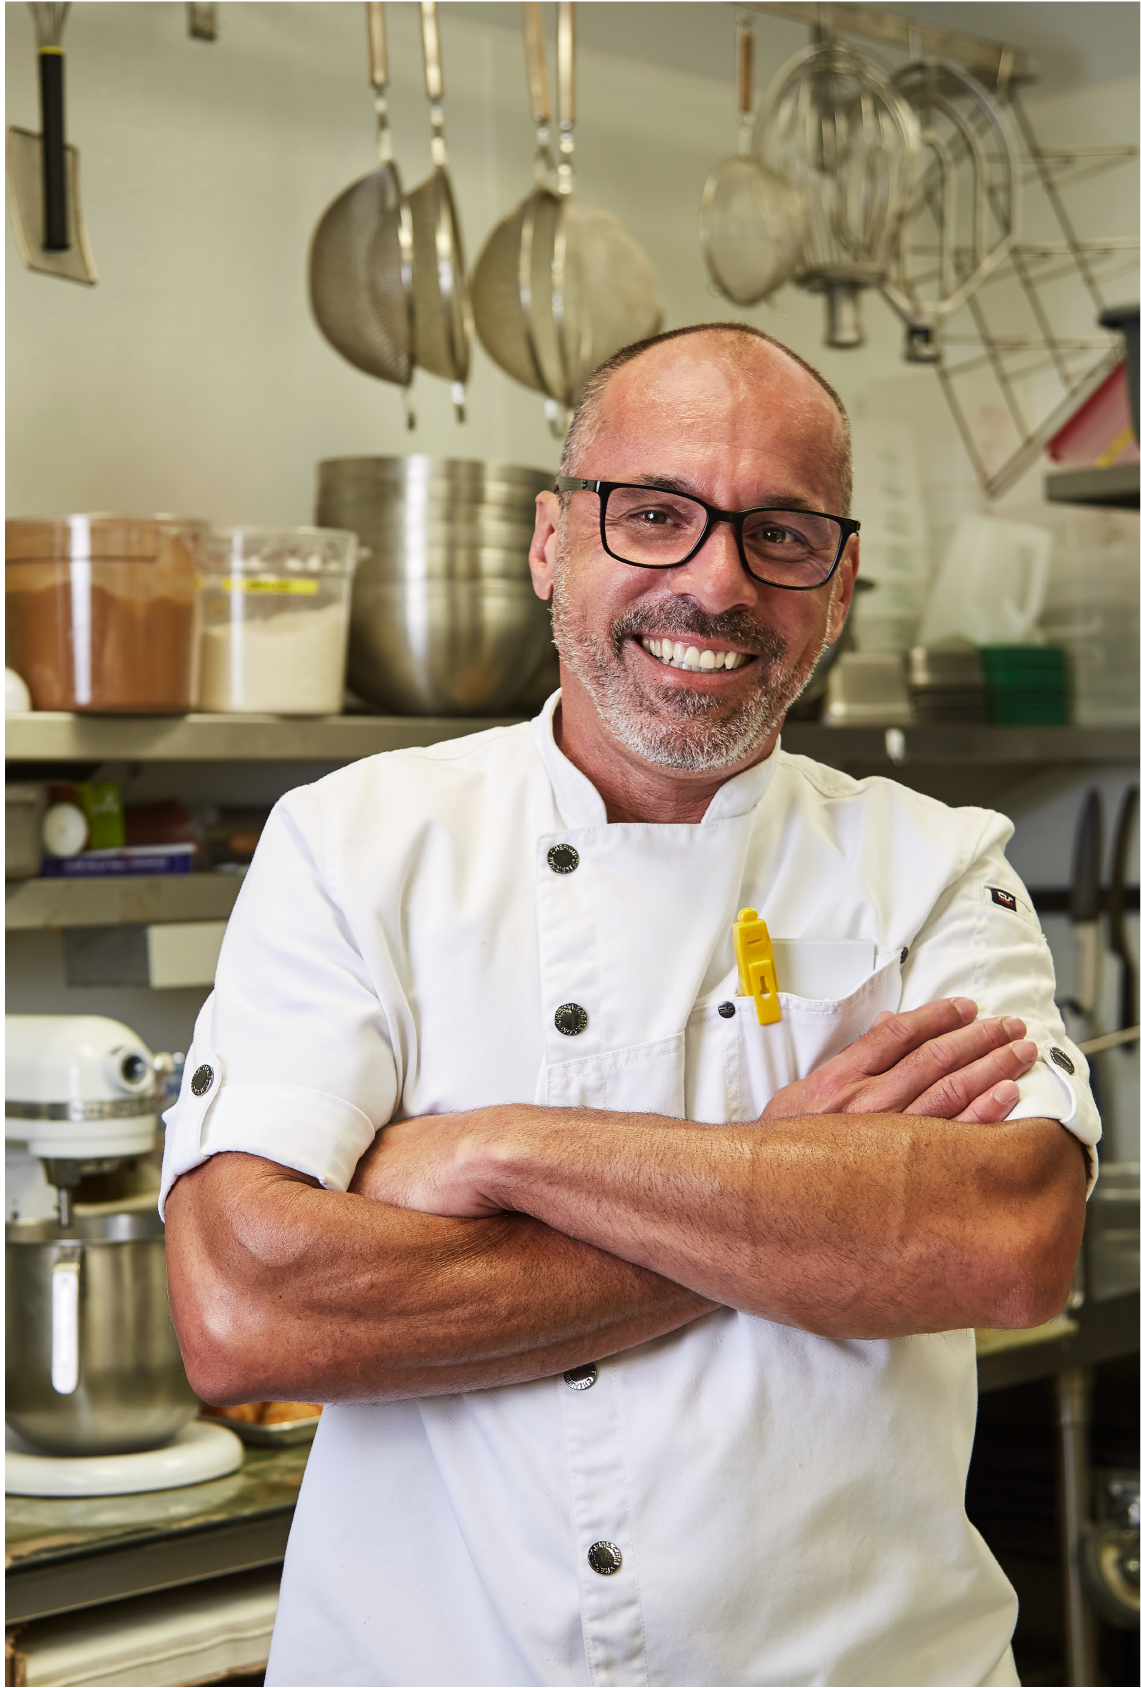 francisco freire bossa nova restaurant owner and executive chef